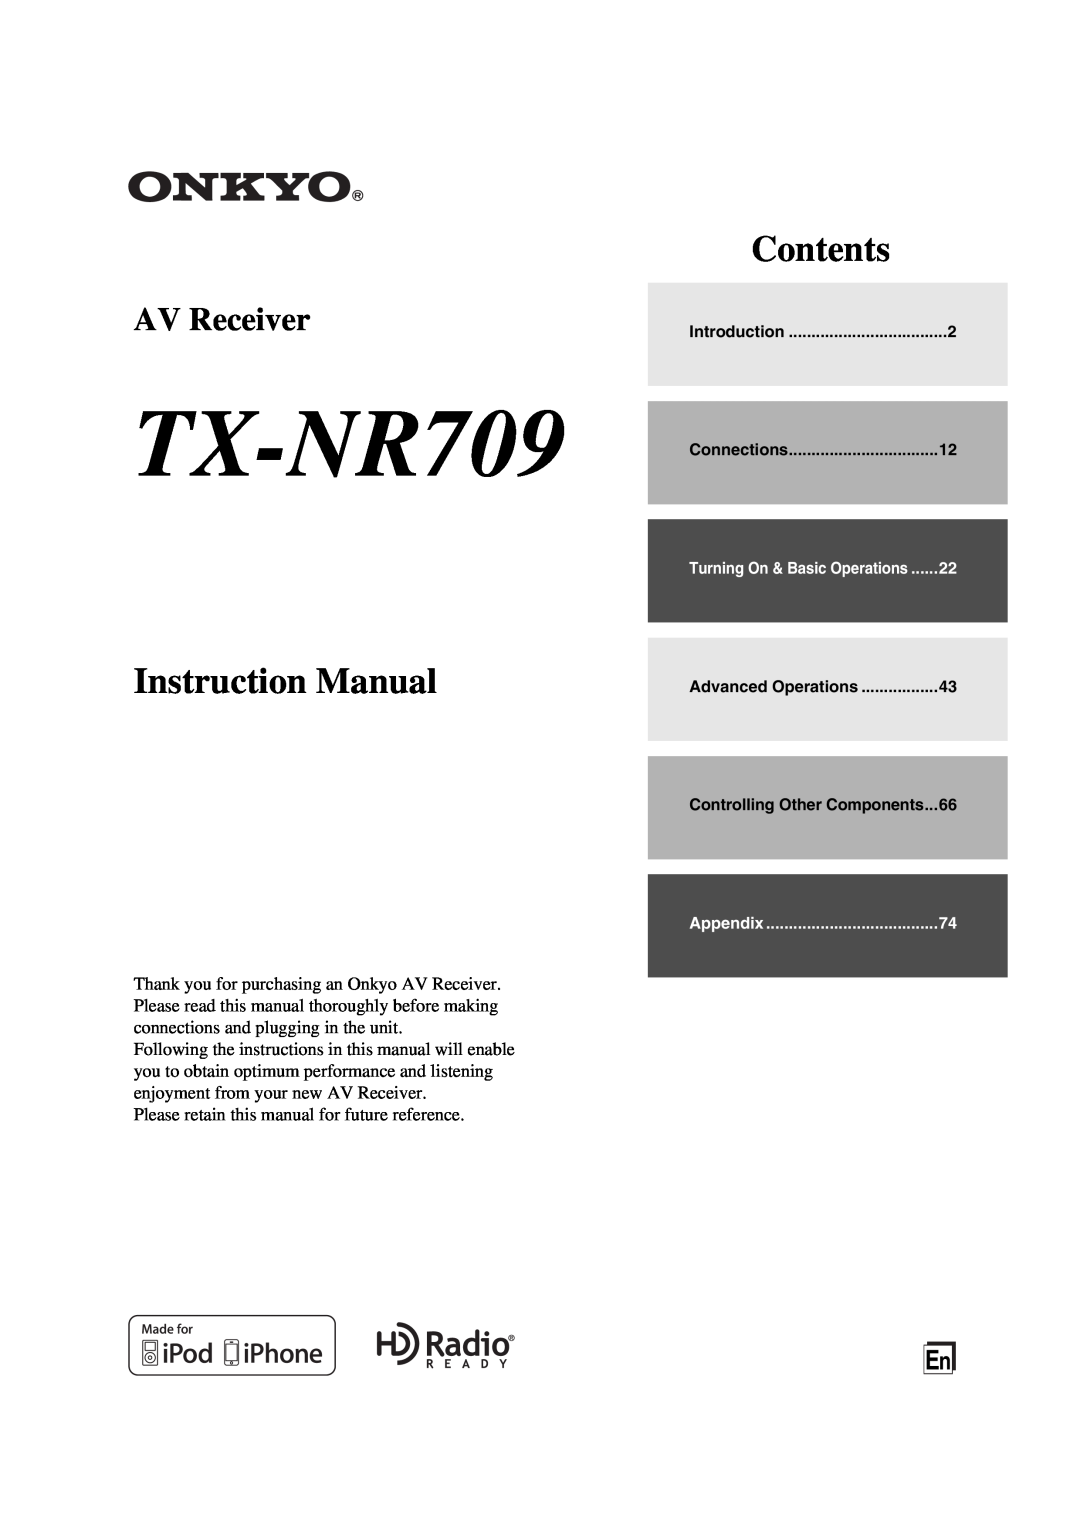 Onkyo TX-NR709 instruction manual Instruction Manual, Contents, AV Receiver 